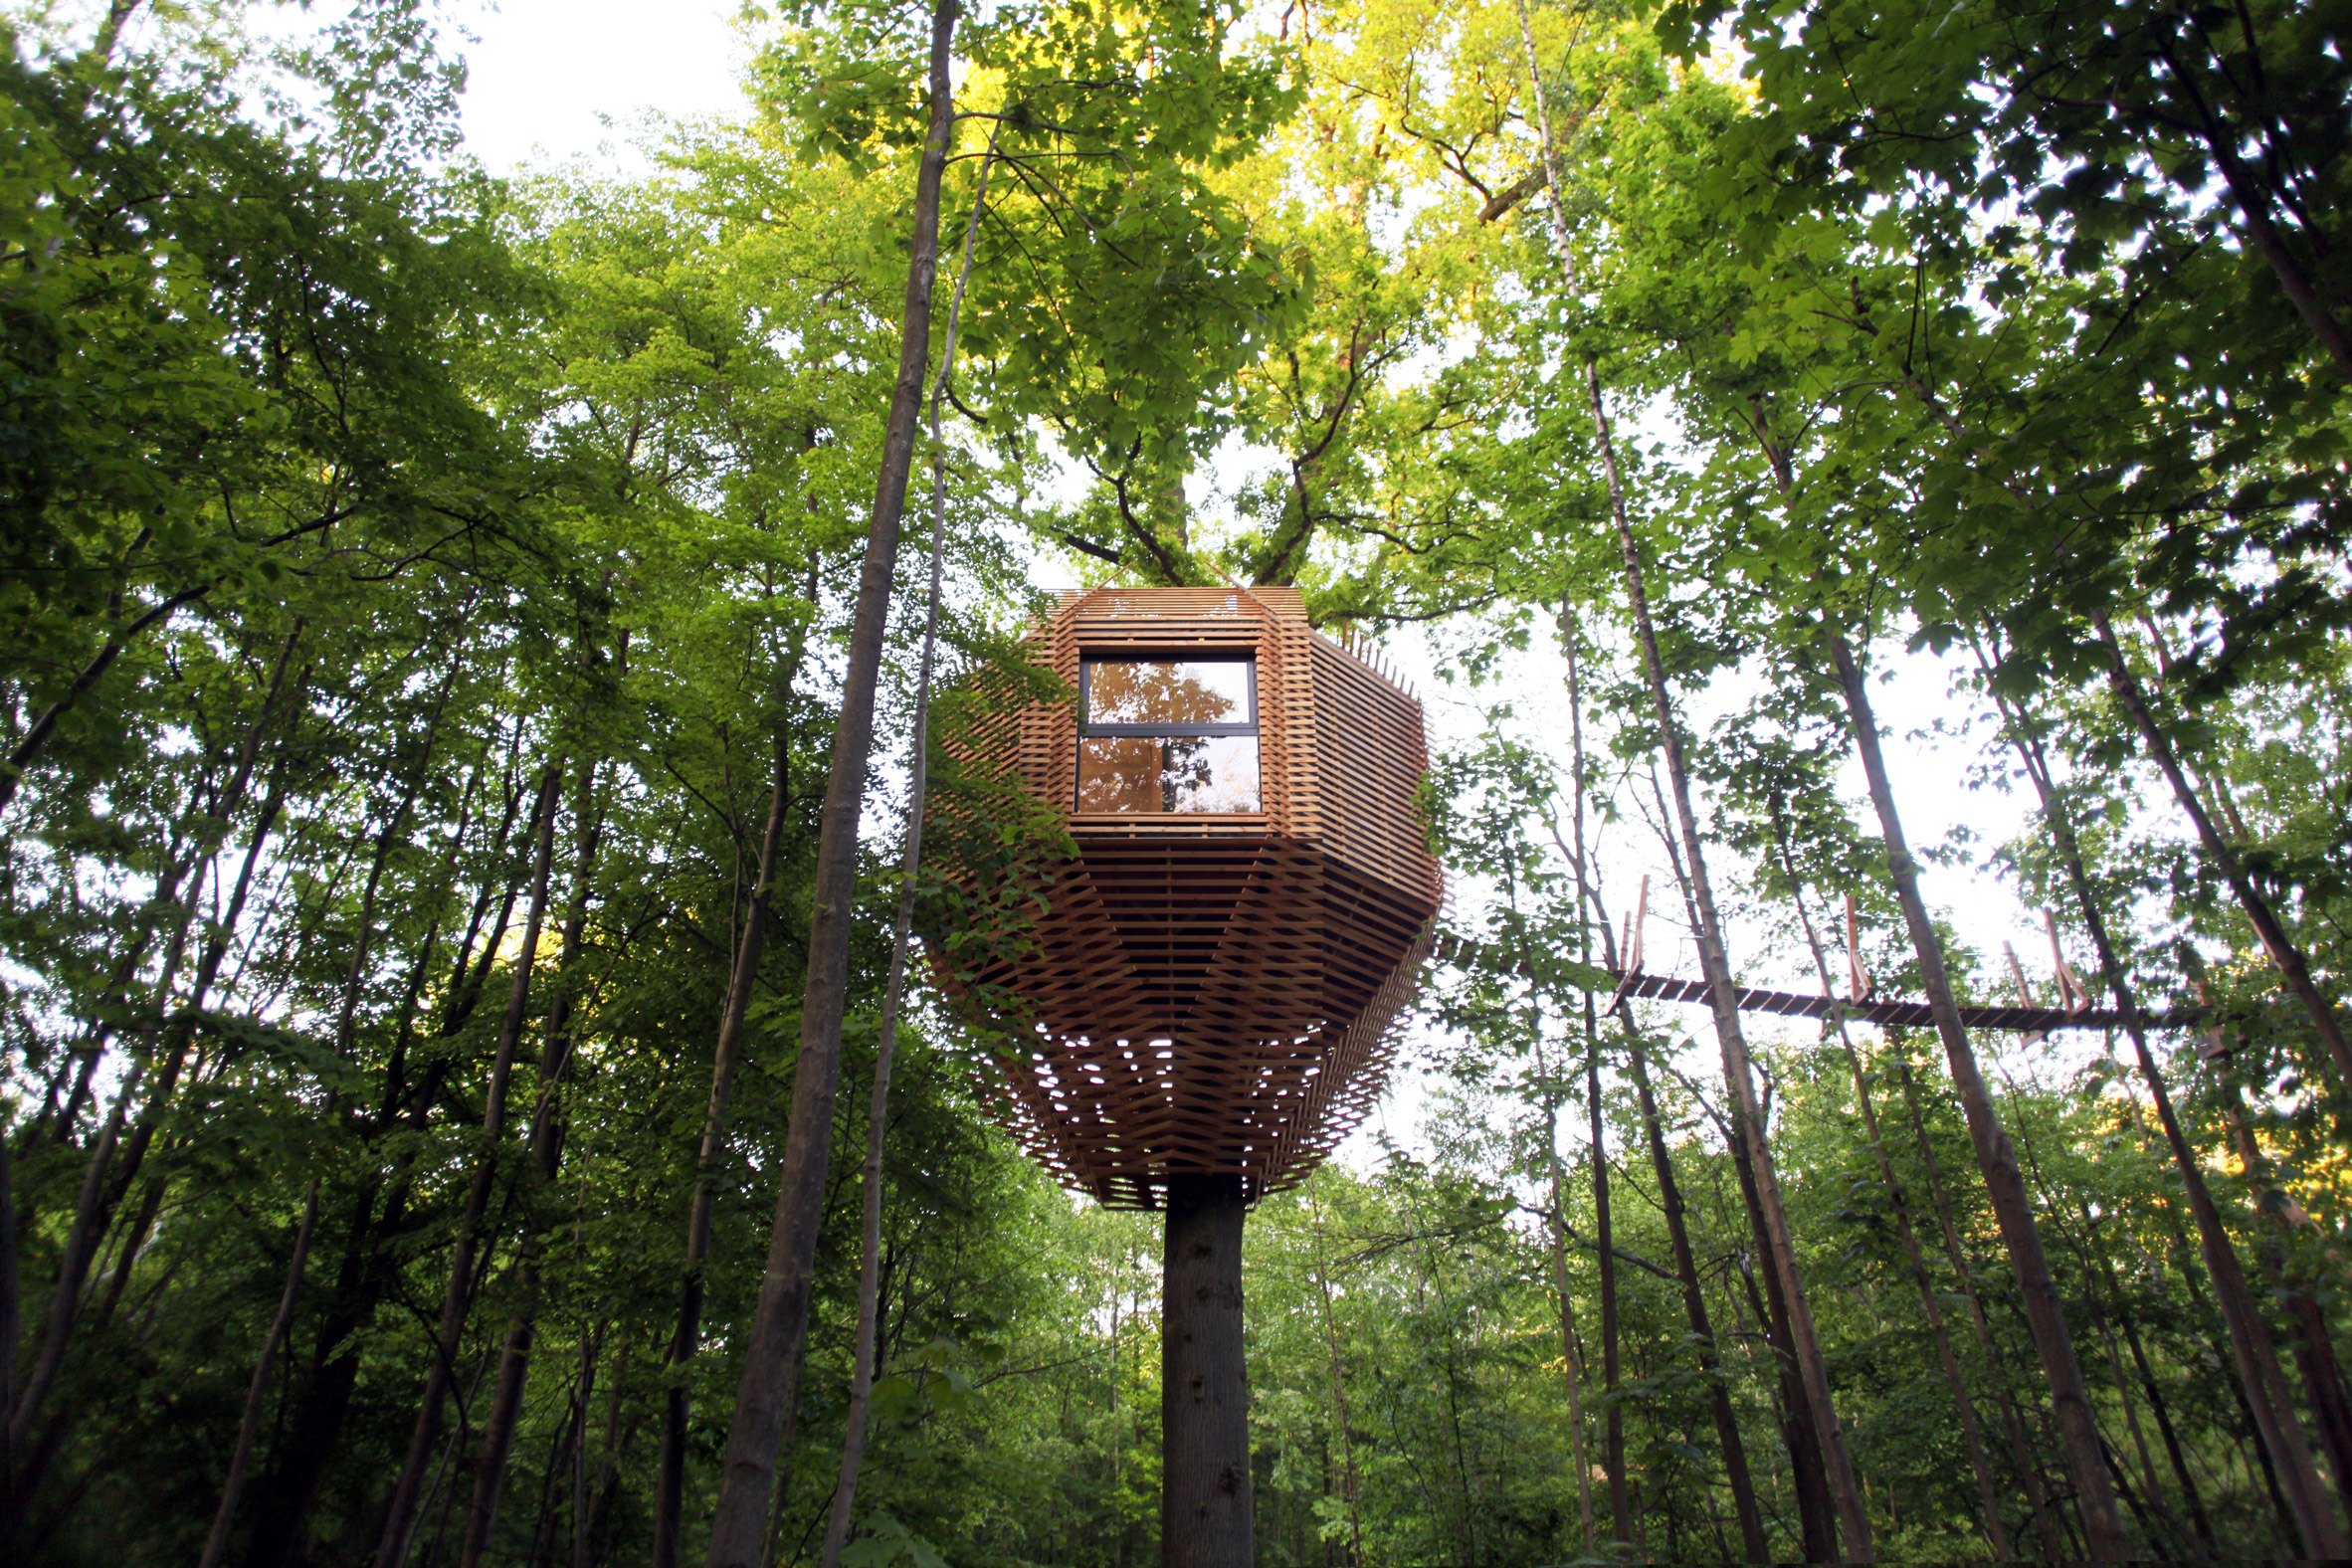 Origin tree house by Atelier Lavit